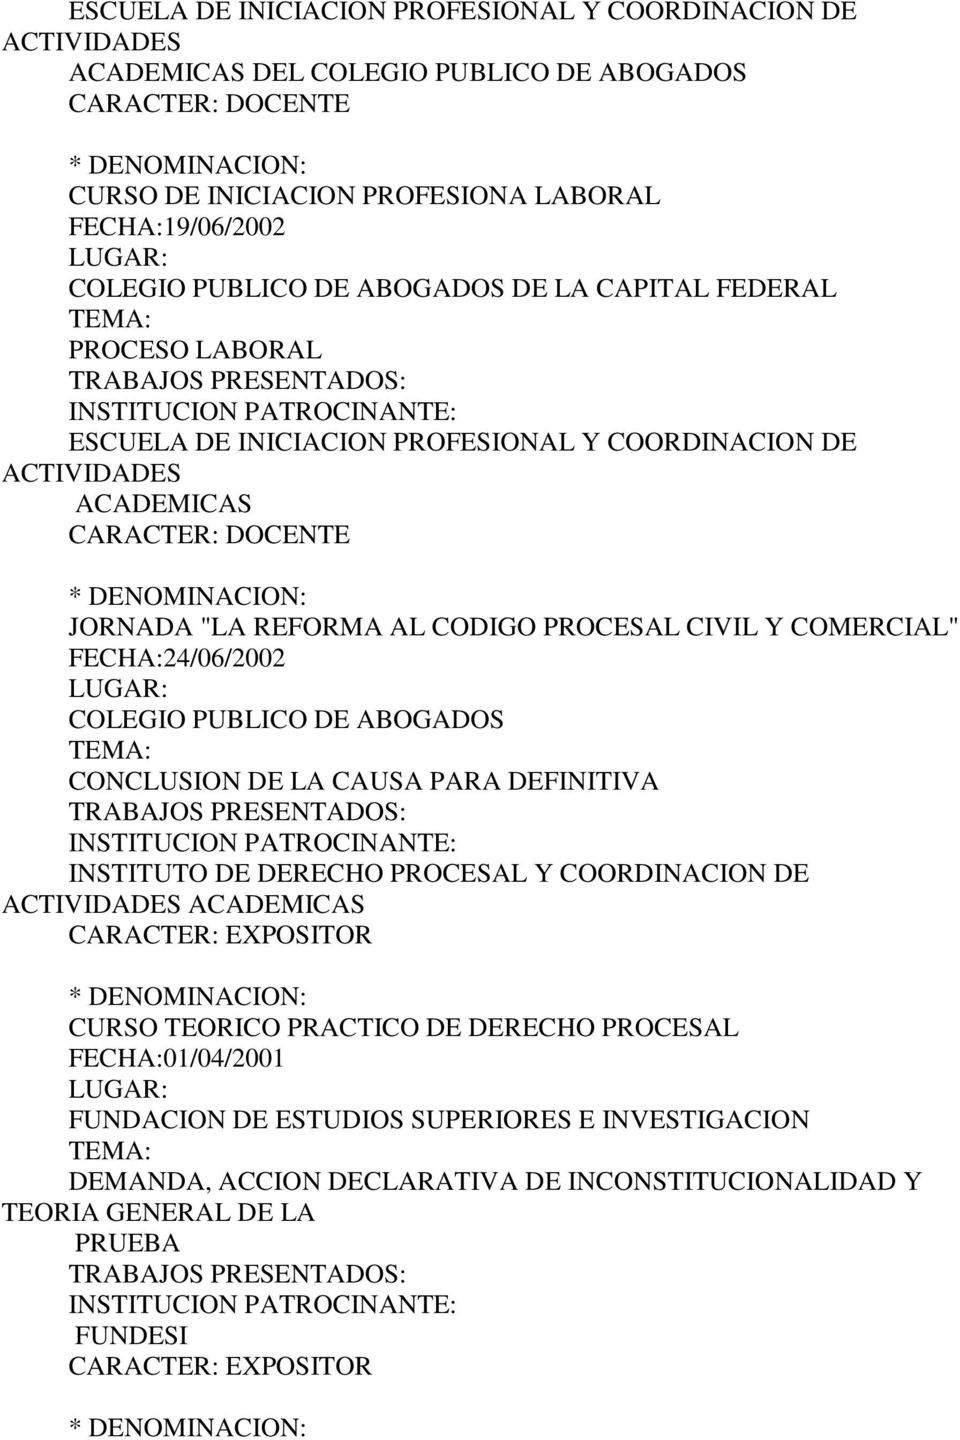 CODIGO PROCESAL CIVIL Y COMERCIAL" FECHA:24/06/2002 COLEGIO PUBLICO DE ABOGADOS CONCLUSION DE LA CAUSA PARA DEFINITIVA INSTITUTO DE DERECHO PROCESAL Y COORDINACION DE ACTIVIDADES